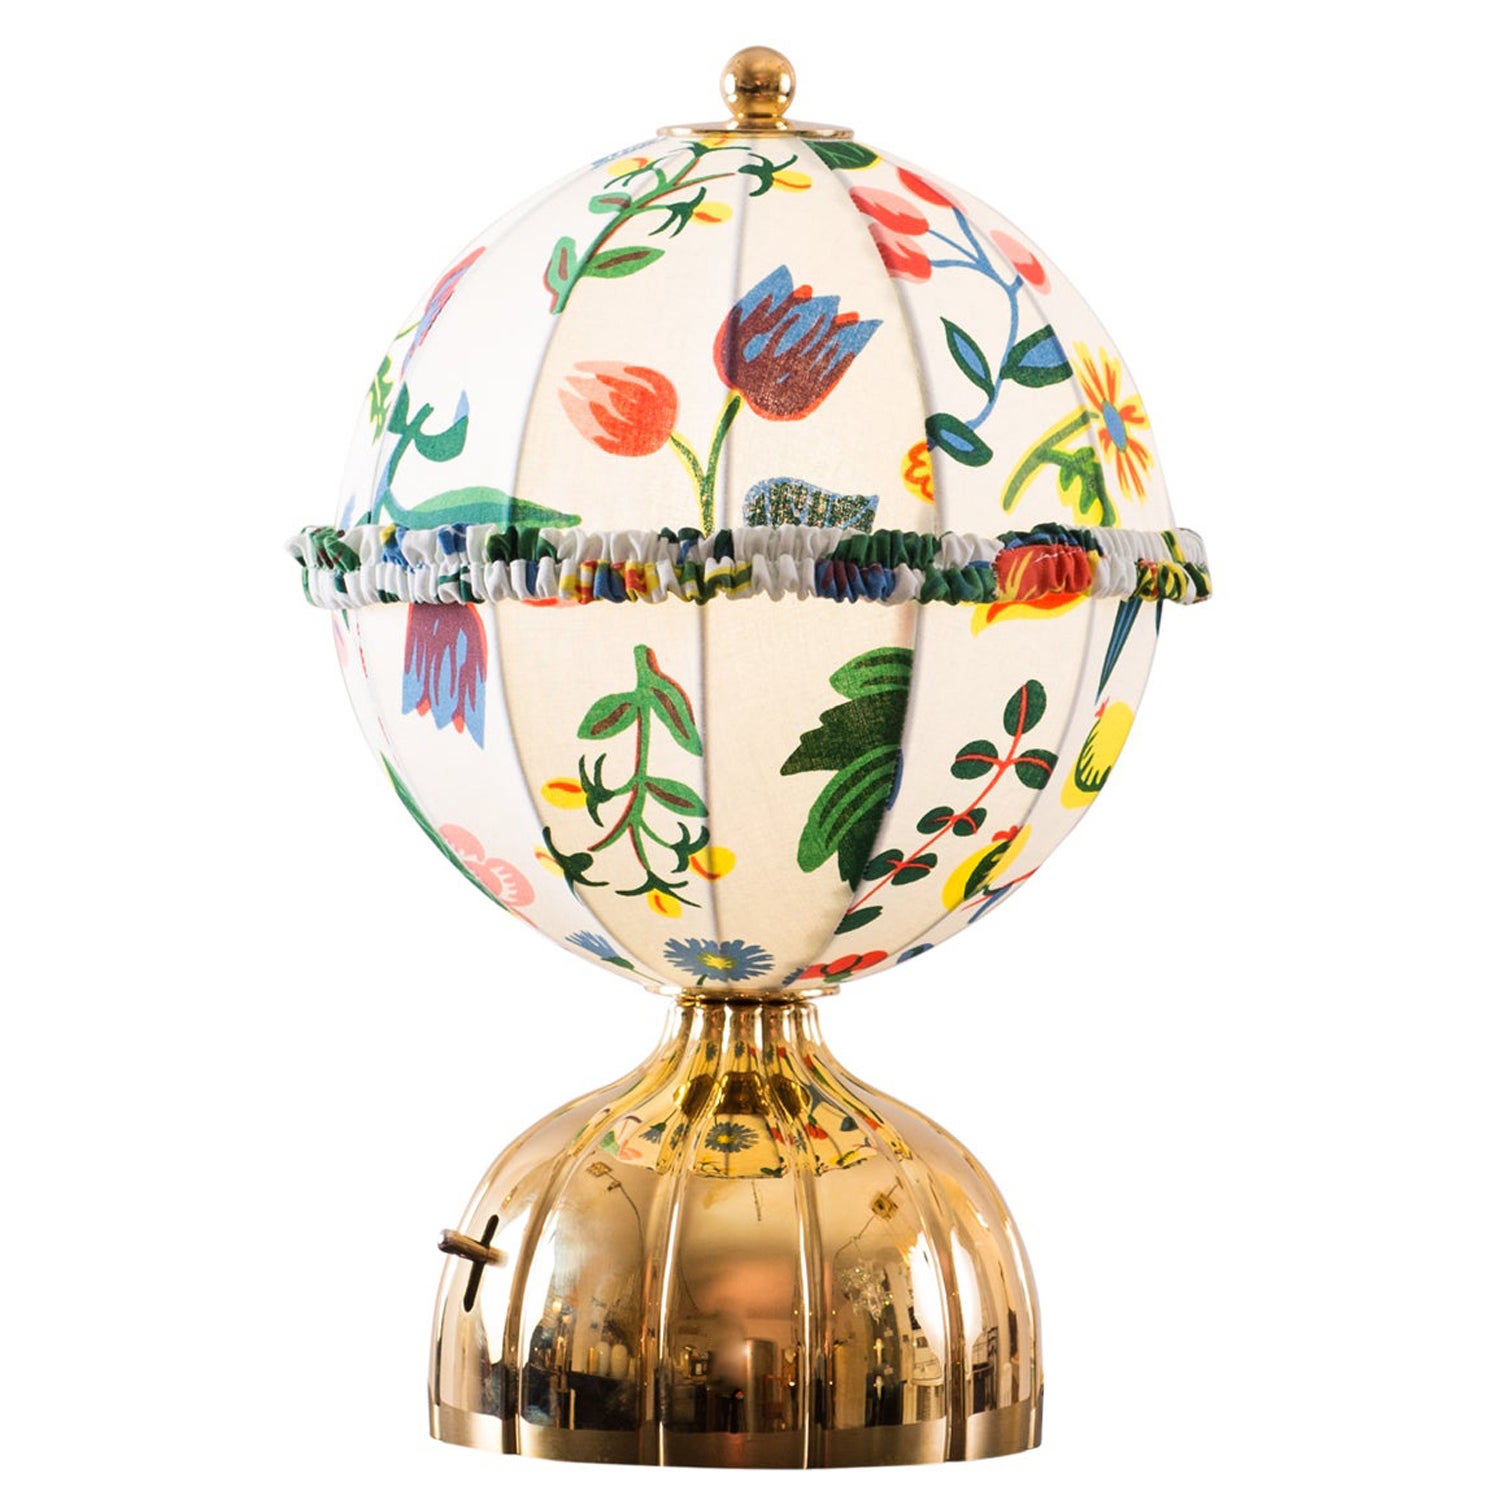 Josef Hoffmann & Josef Frank & Wiener Werkstaette Ball Table Lamp Re-Edition